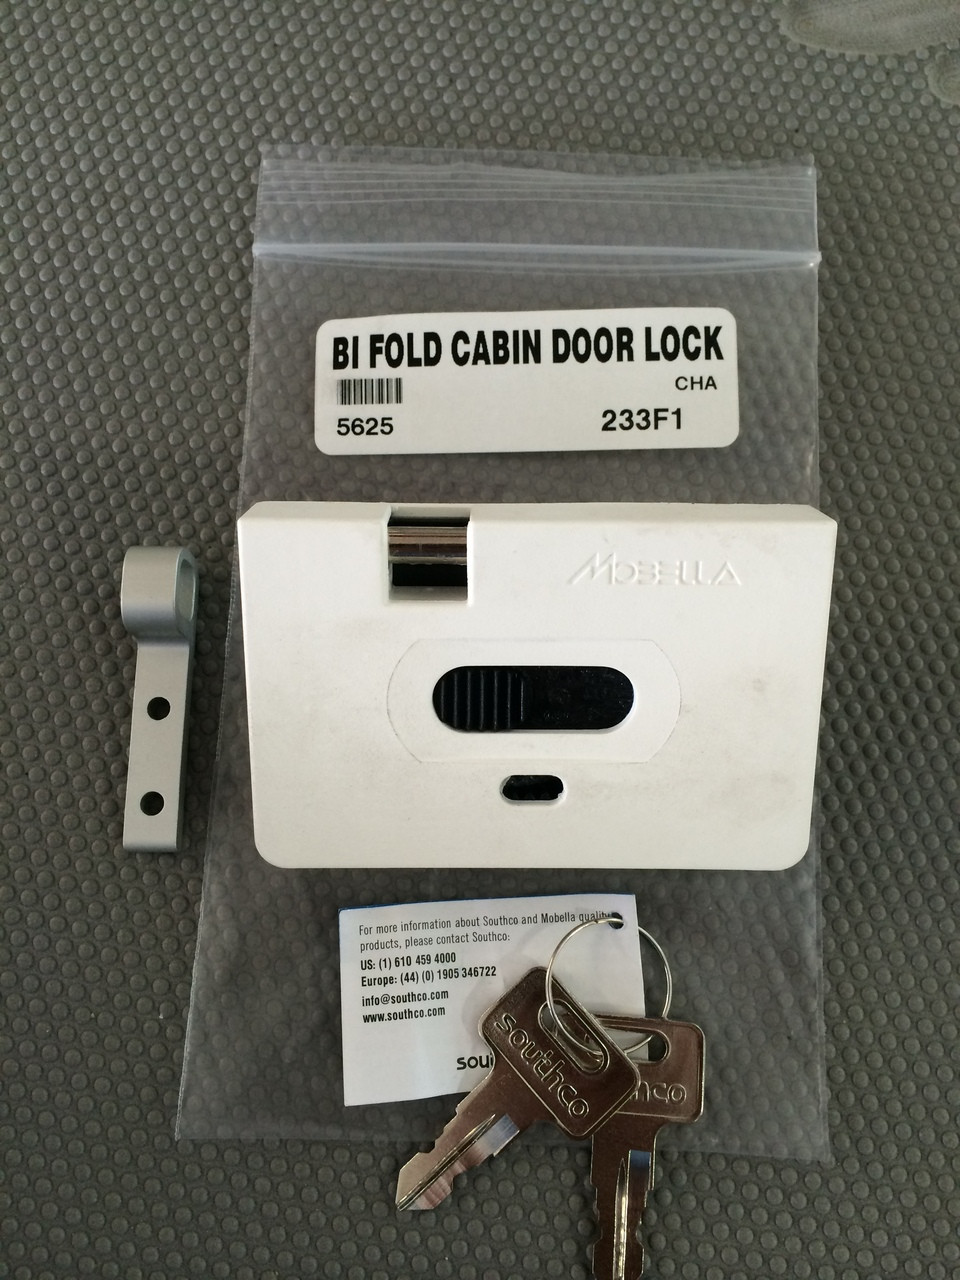 BI FOLD CABIN DOOR LOCK